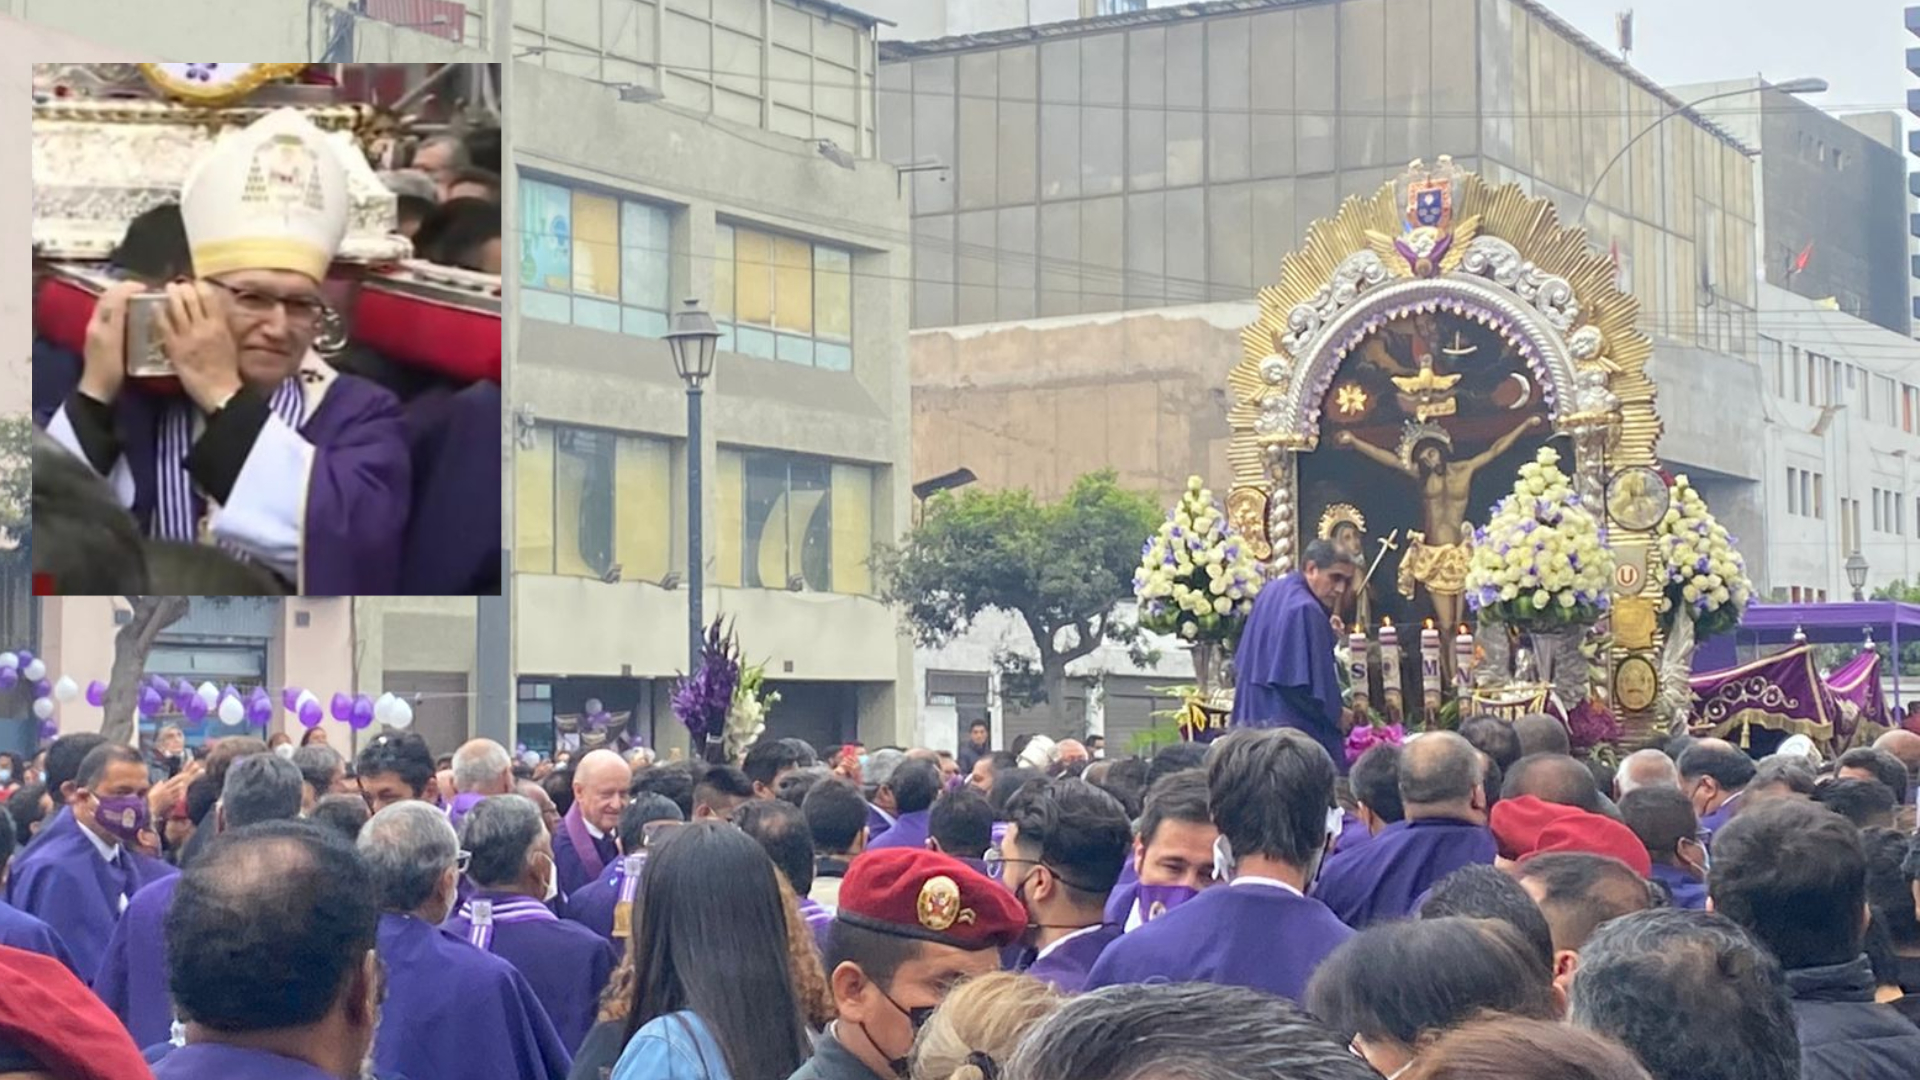 Anda del Señor de los Milagros fue cargada por Arzobispo de Lima. (Foto: Jossie Perez/Infobae)